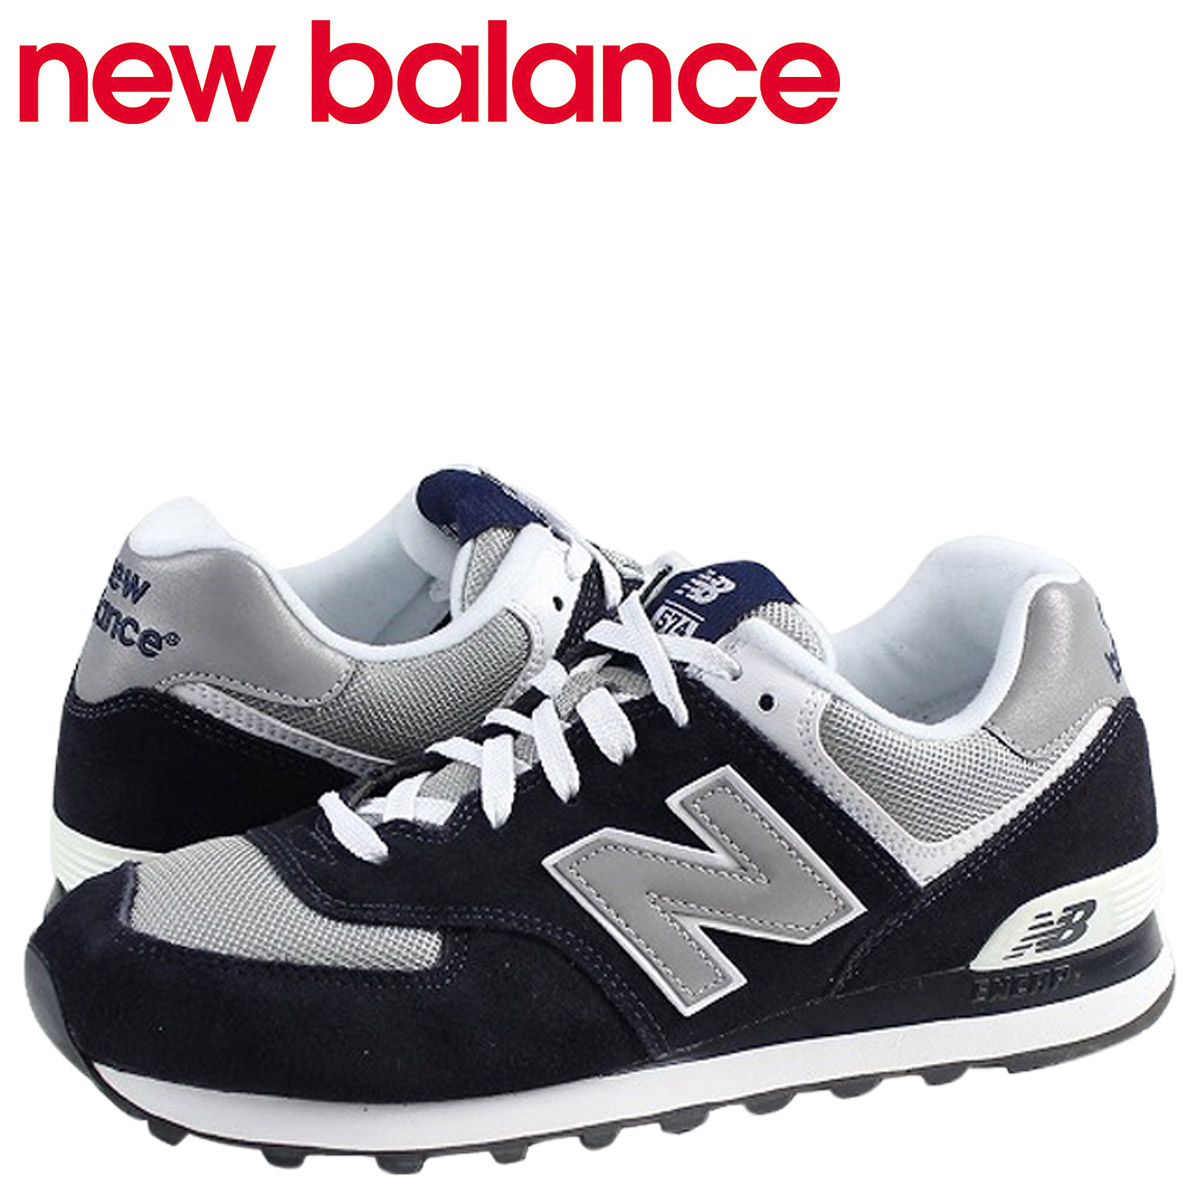 new balance shoes shop online